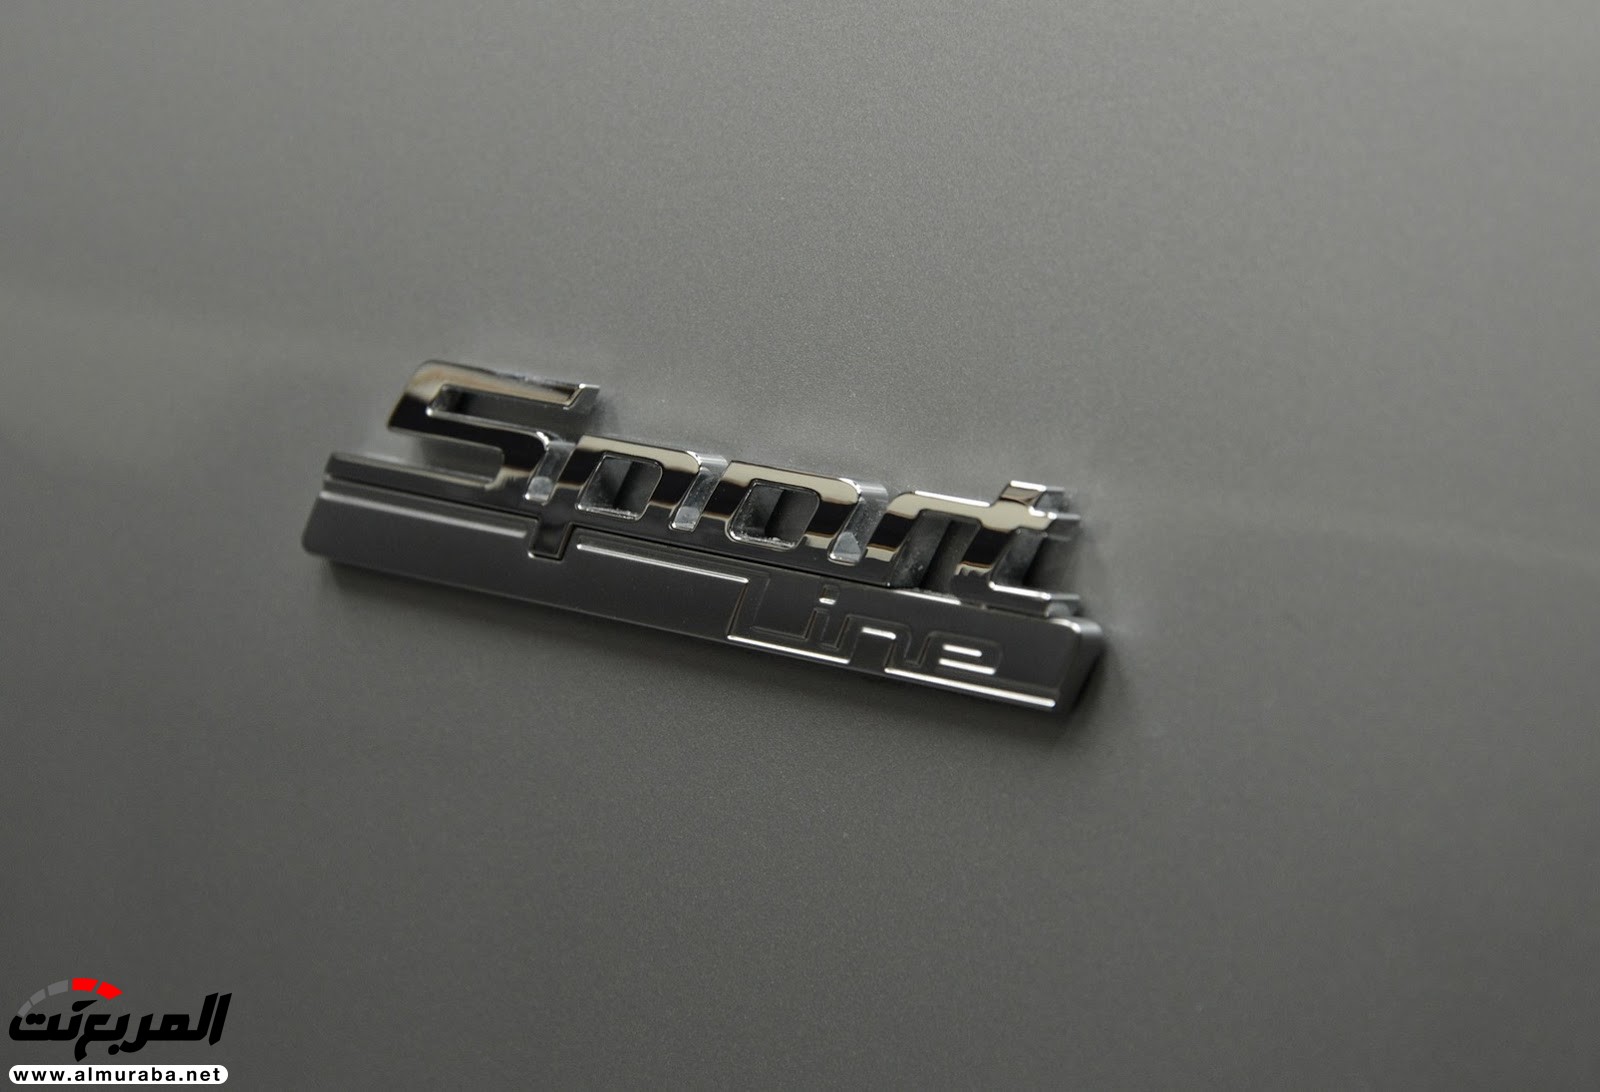 "بي إم دبليو" 540i الجديدة كلياً بتعديلات سبورت لاين معروضة بأبو ظبي BMW 17